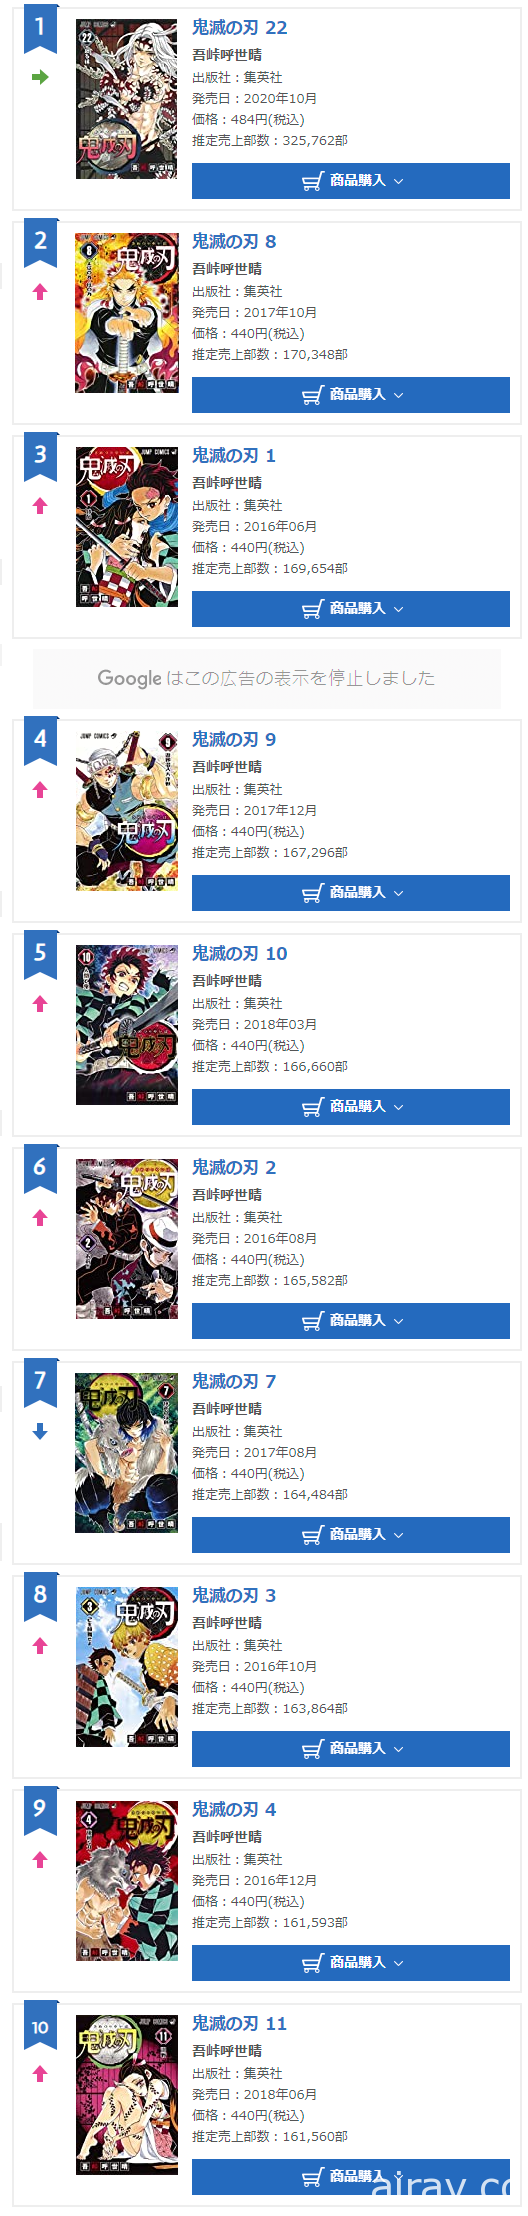 《鬼灭之刃》实体书籍销售突破 9000 万本 全套作品占据 Oricon 周间销售榜前 22 名